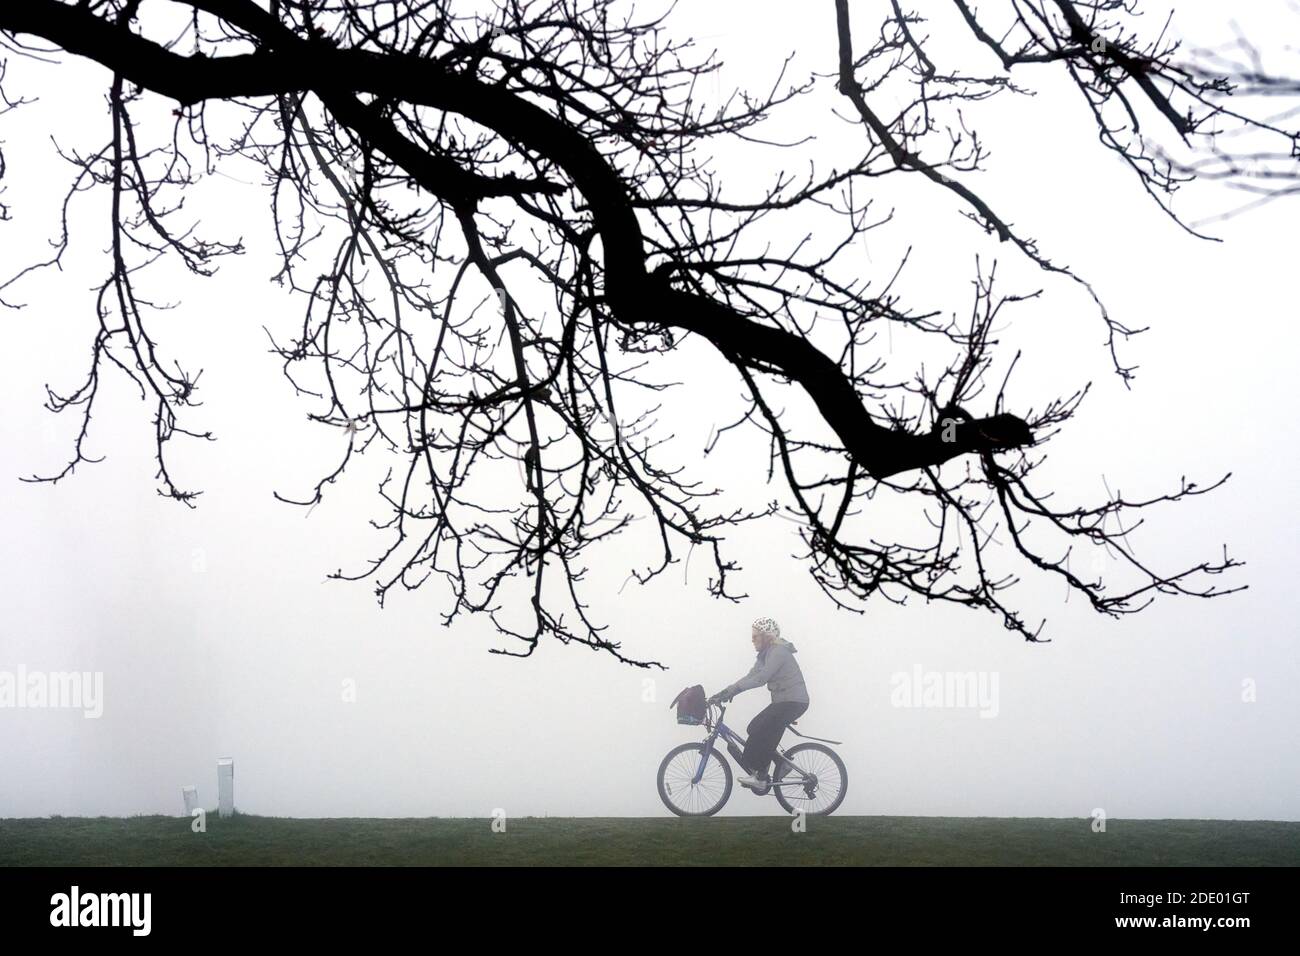 Un ciclista attraversa la nebbia a Bushy Park, a sud-ovest di Londra, dopo che le temperature notturne nell'Inghilterra meridionale sono scese al di sotto del gelo. Data immagine: Venerdì 27 novembre 2020. Il credito fotografico dovrebbe essere: John Walton/PA Wire Foto Stock